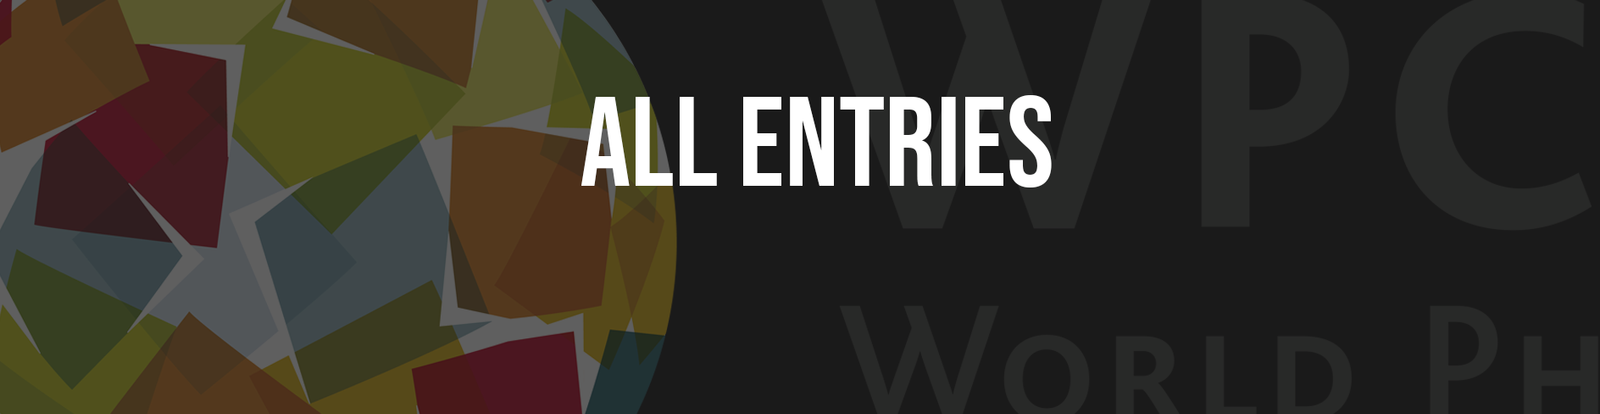 2014 – All entries